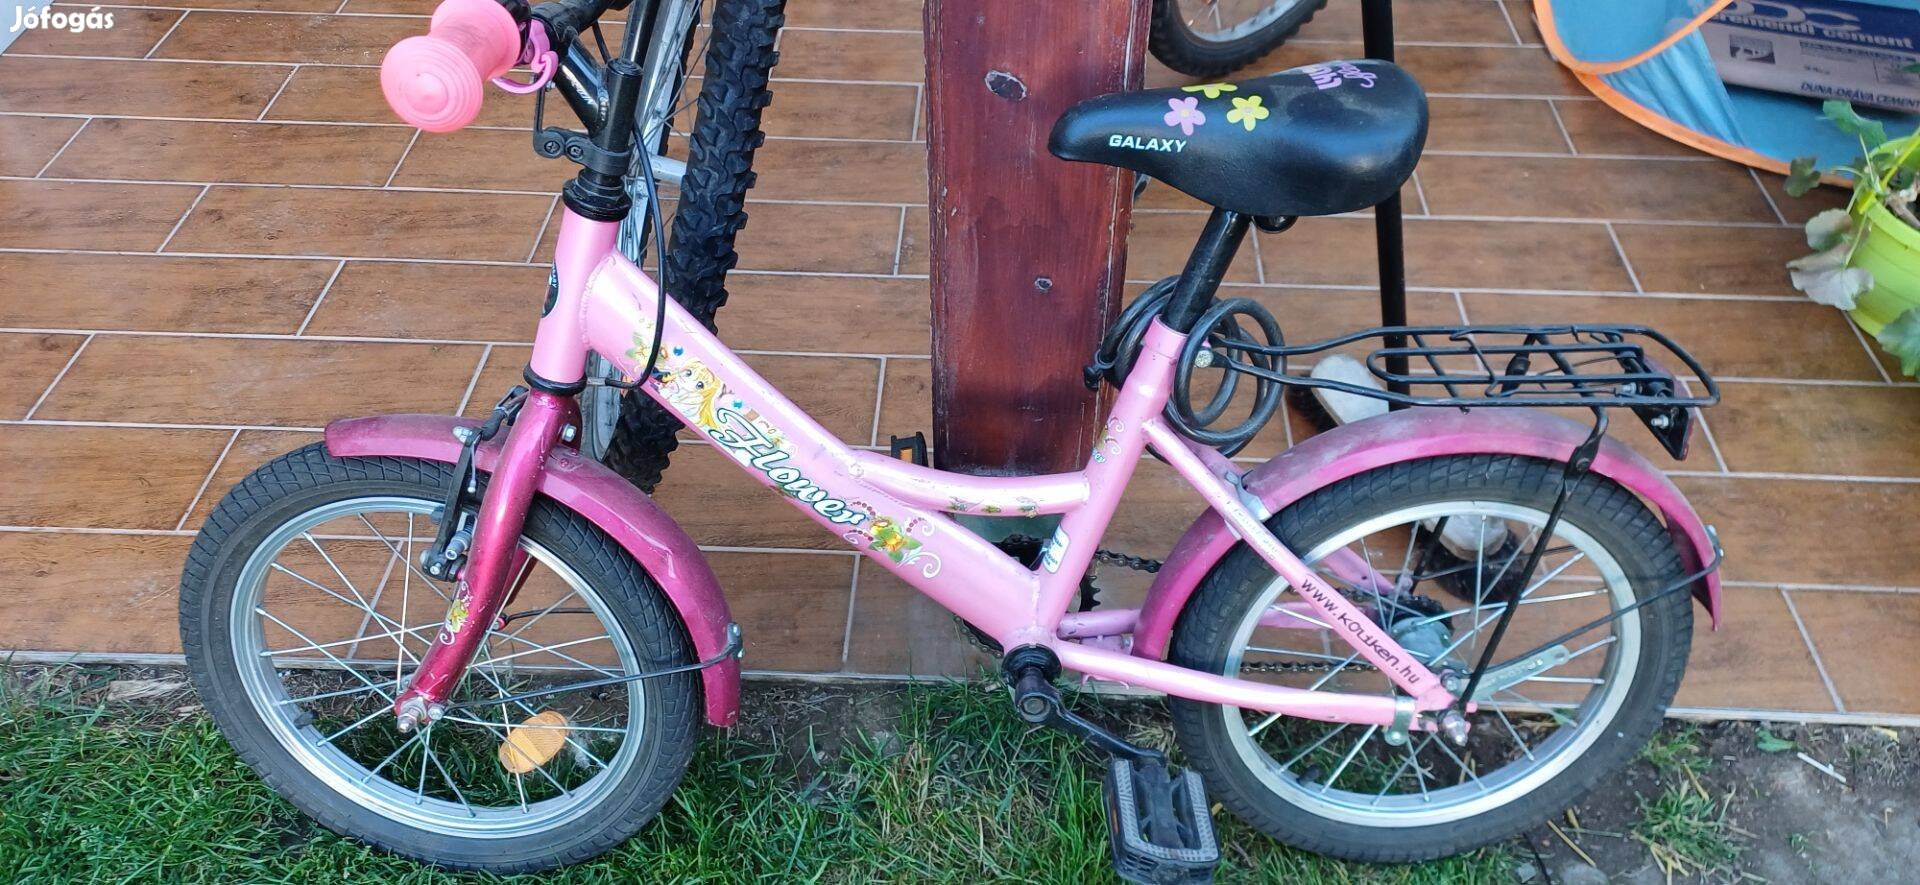 Eladó kislány bicikli